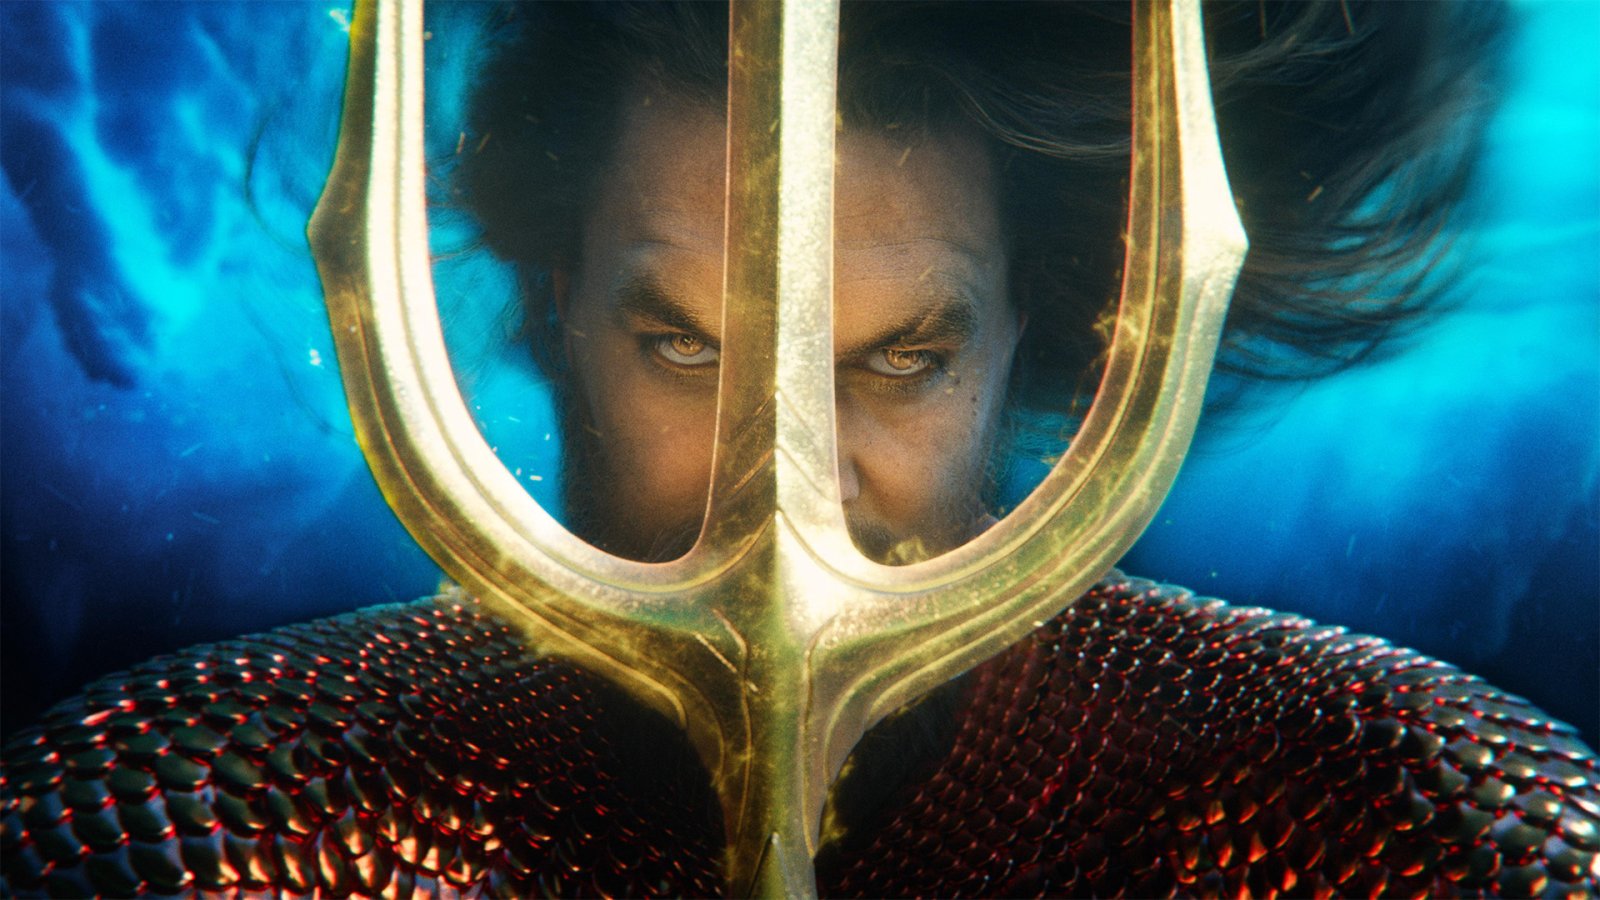 [รีวิว] Aquaman and the Lost Kingdom: คู่หูพ่อใหญ่เจ้าสมุทร งานบันเทิงสุดฉ่ำ แต่อารมณ์ร่วมแห้งแล้ง